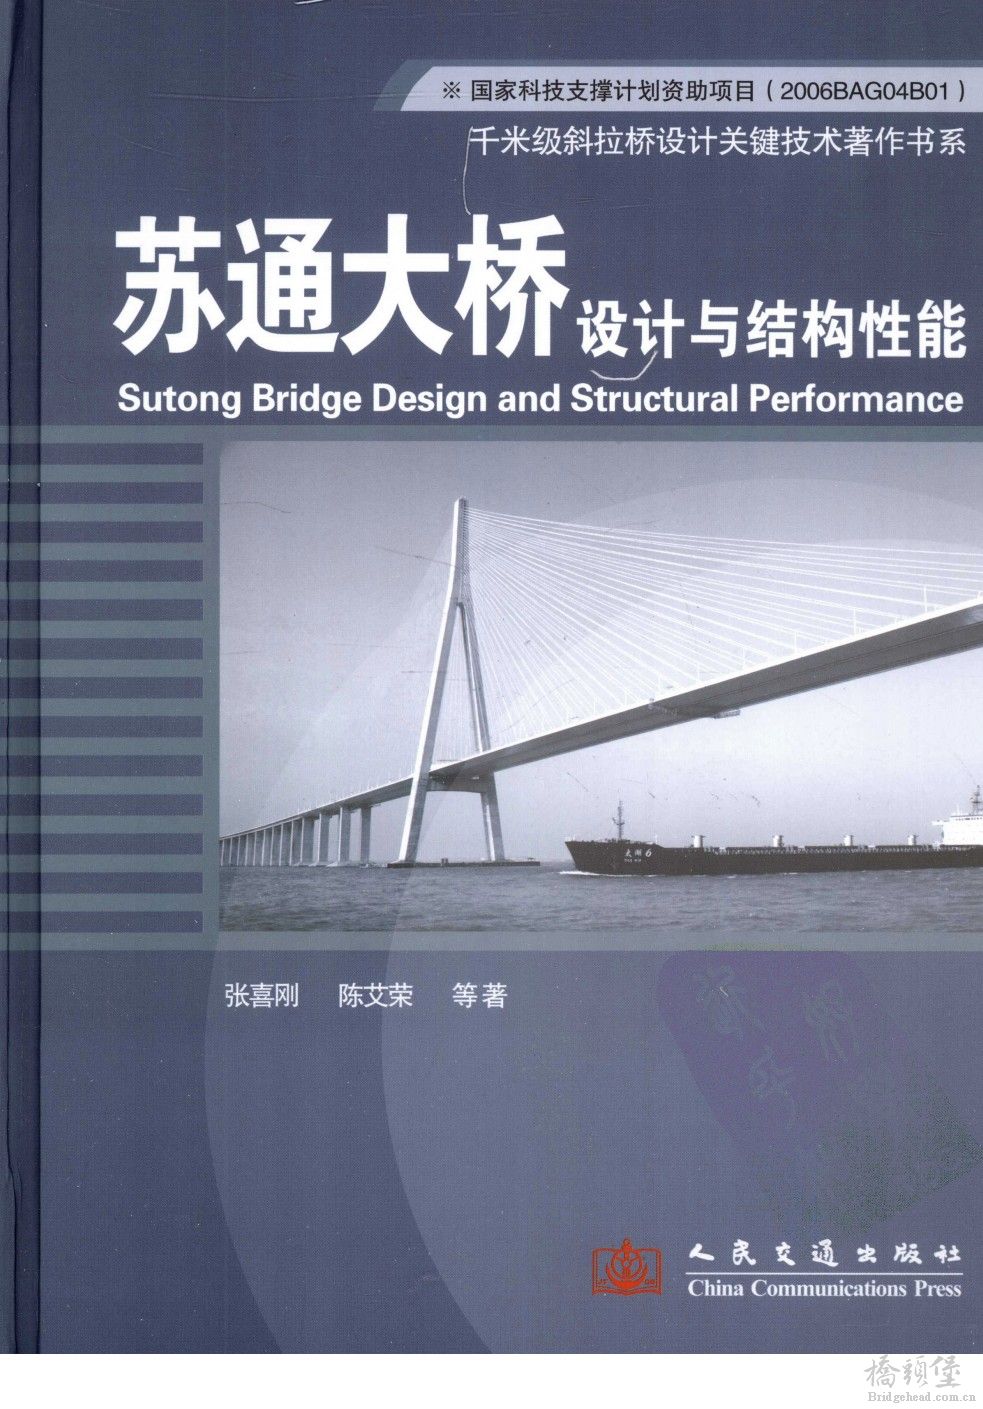 苏通大桥设计与结构性能_页面_001.jpg